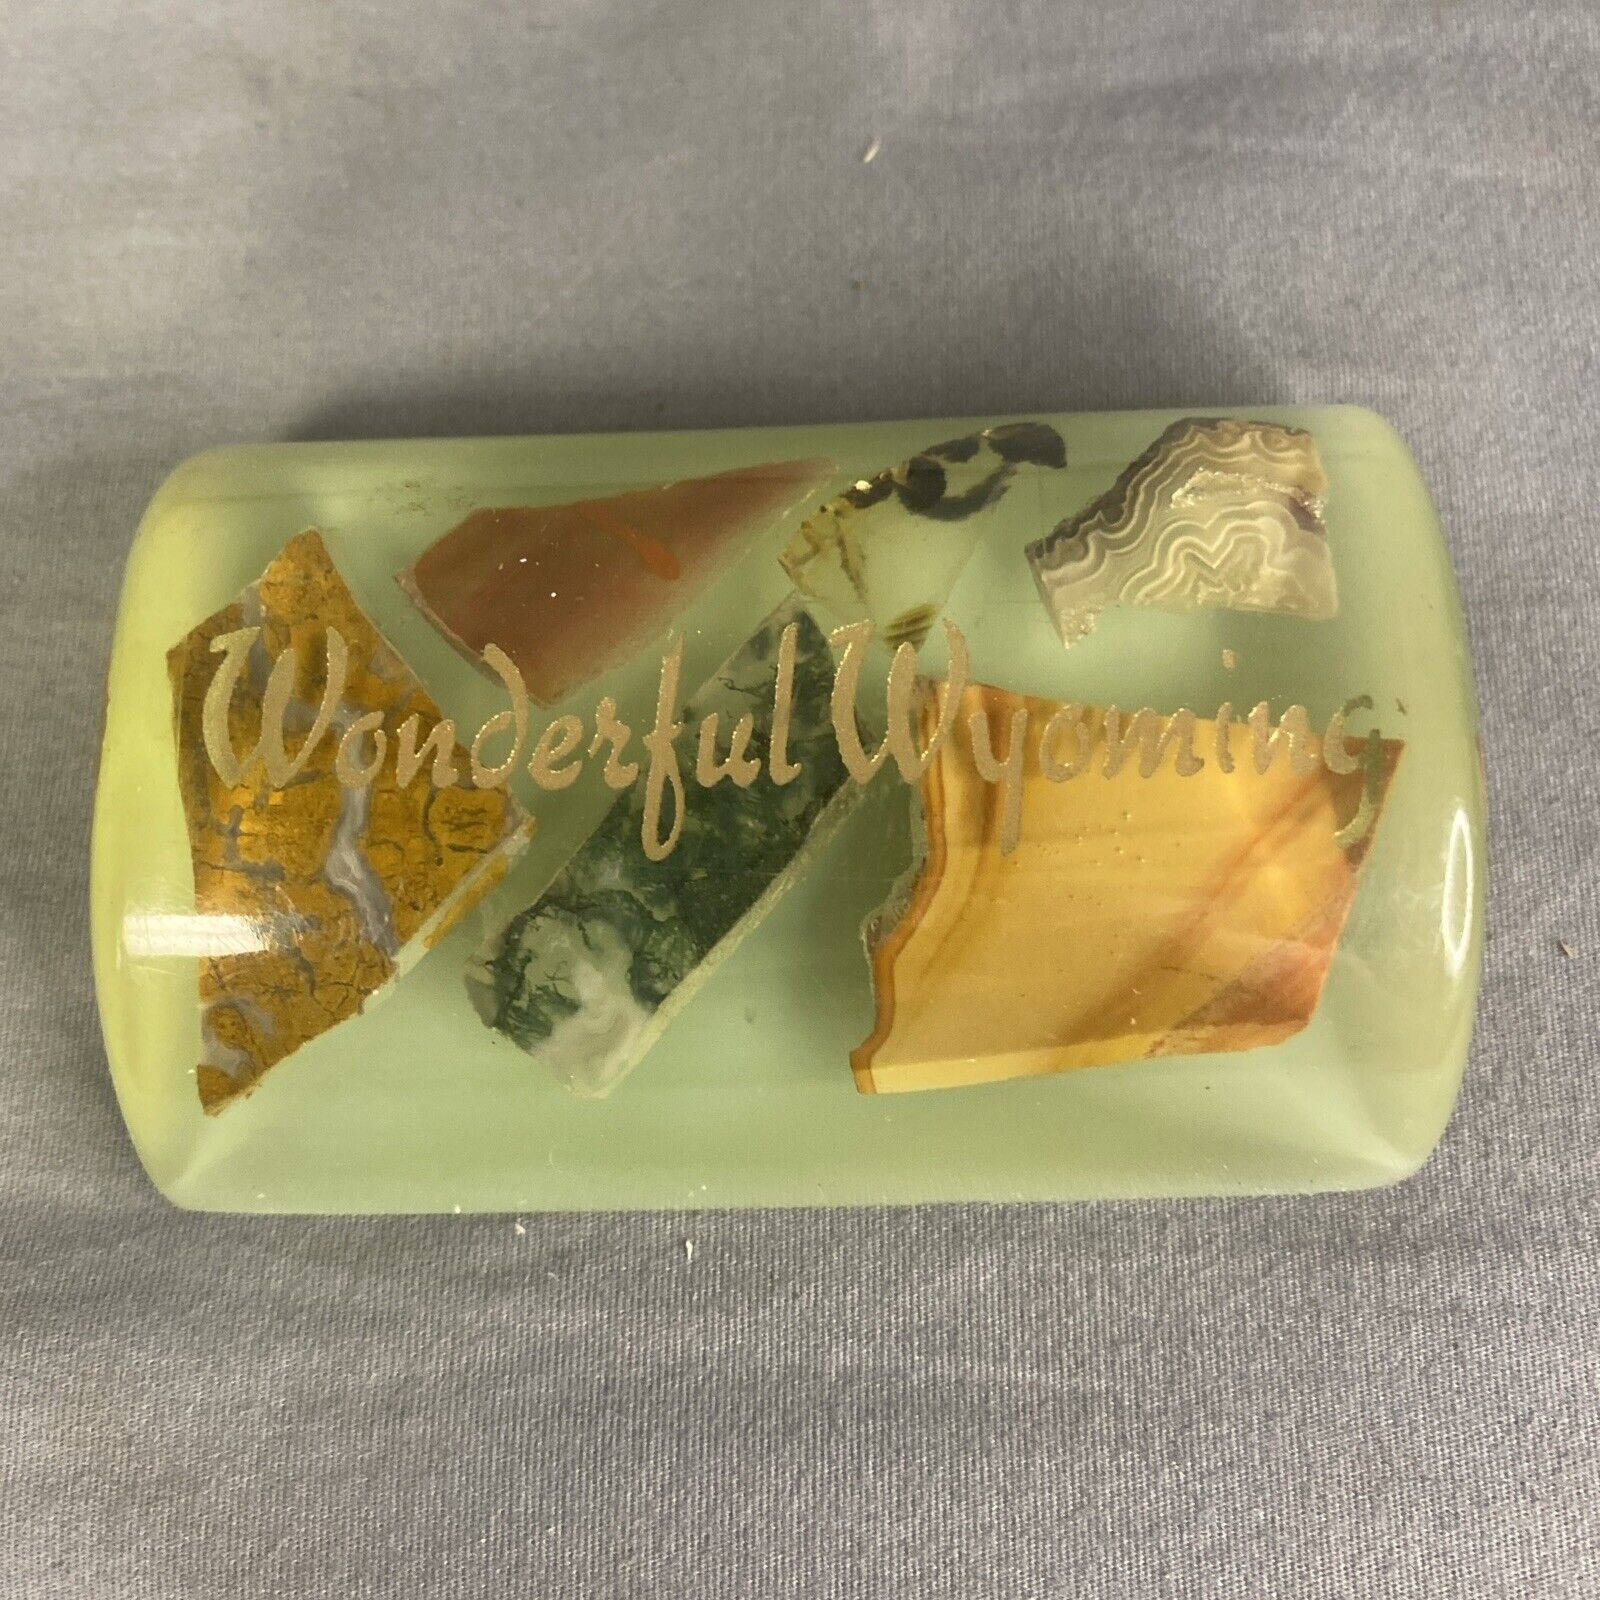 Vintage Wonderful Wyoming Rock Samples Paperweight Souvenir